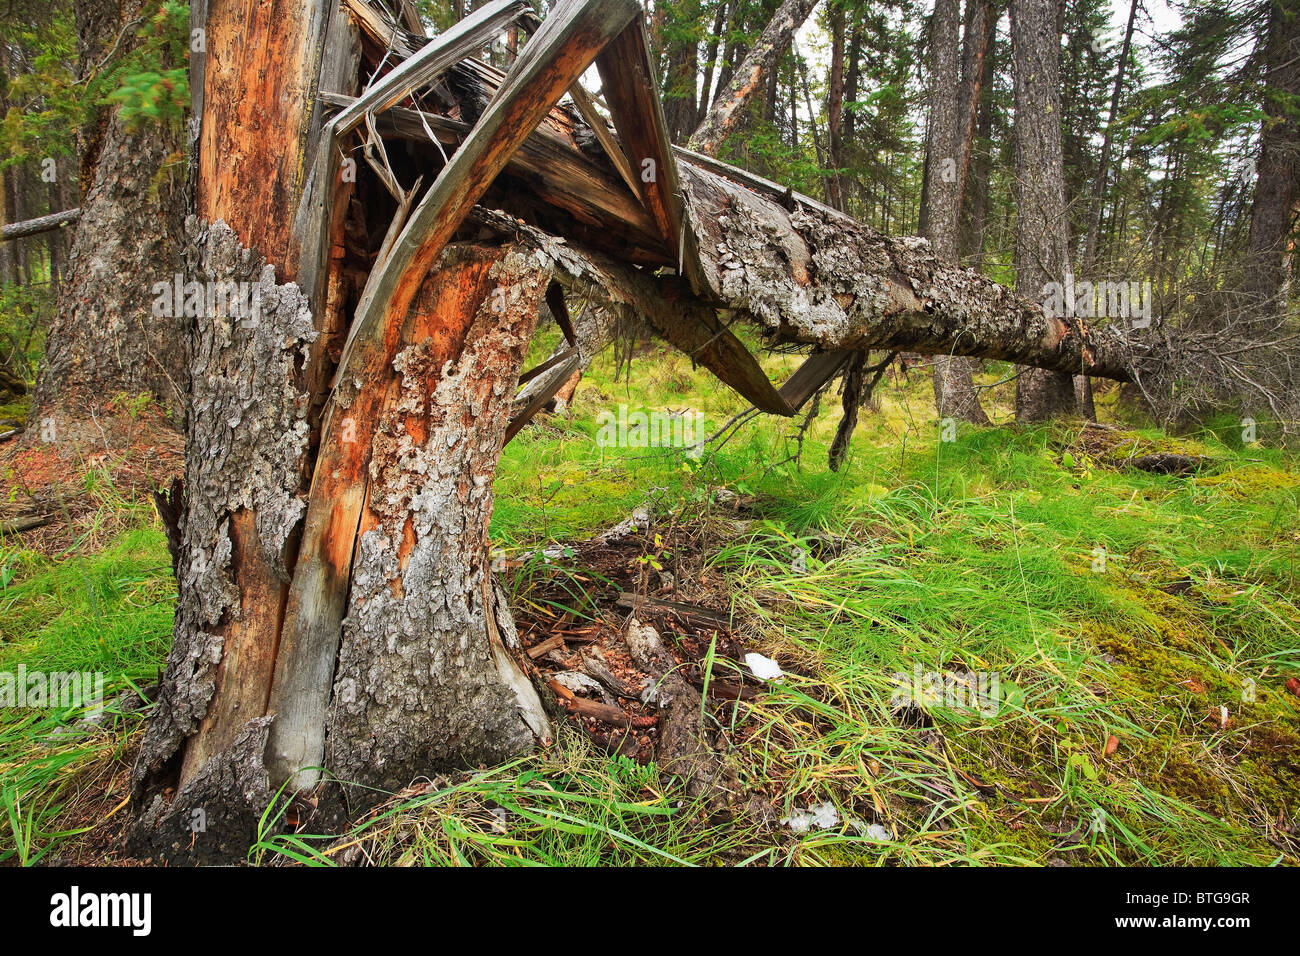 Arbre vert déchu, soufflé dans une récente tempête de vent, parc national Banff, Alberta, Canada. Banque D'Images